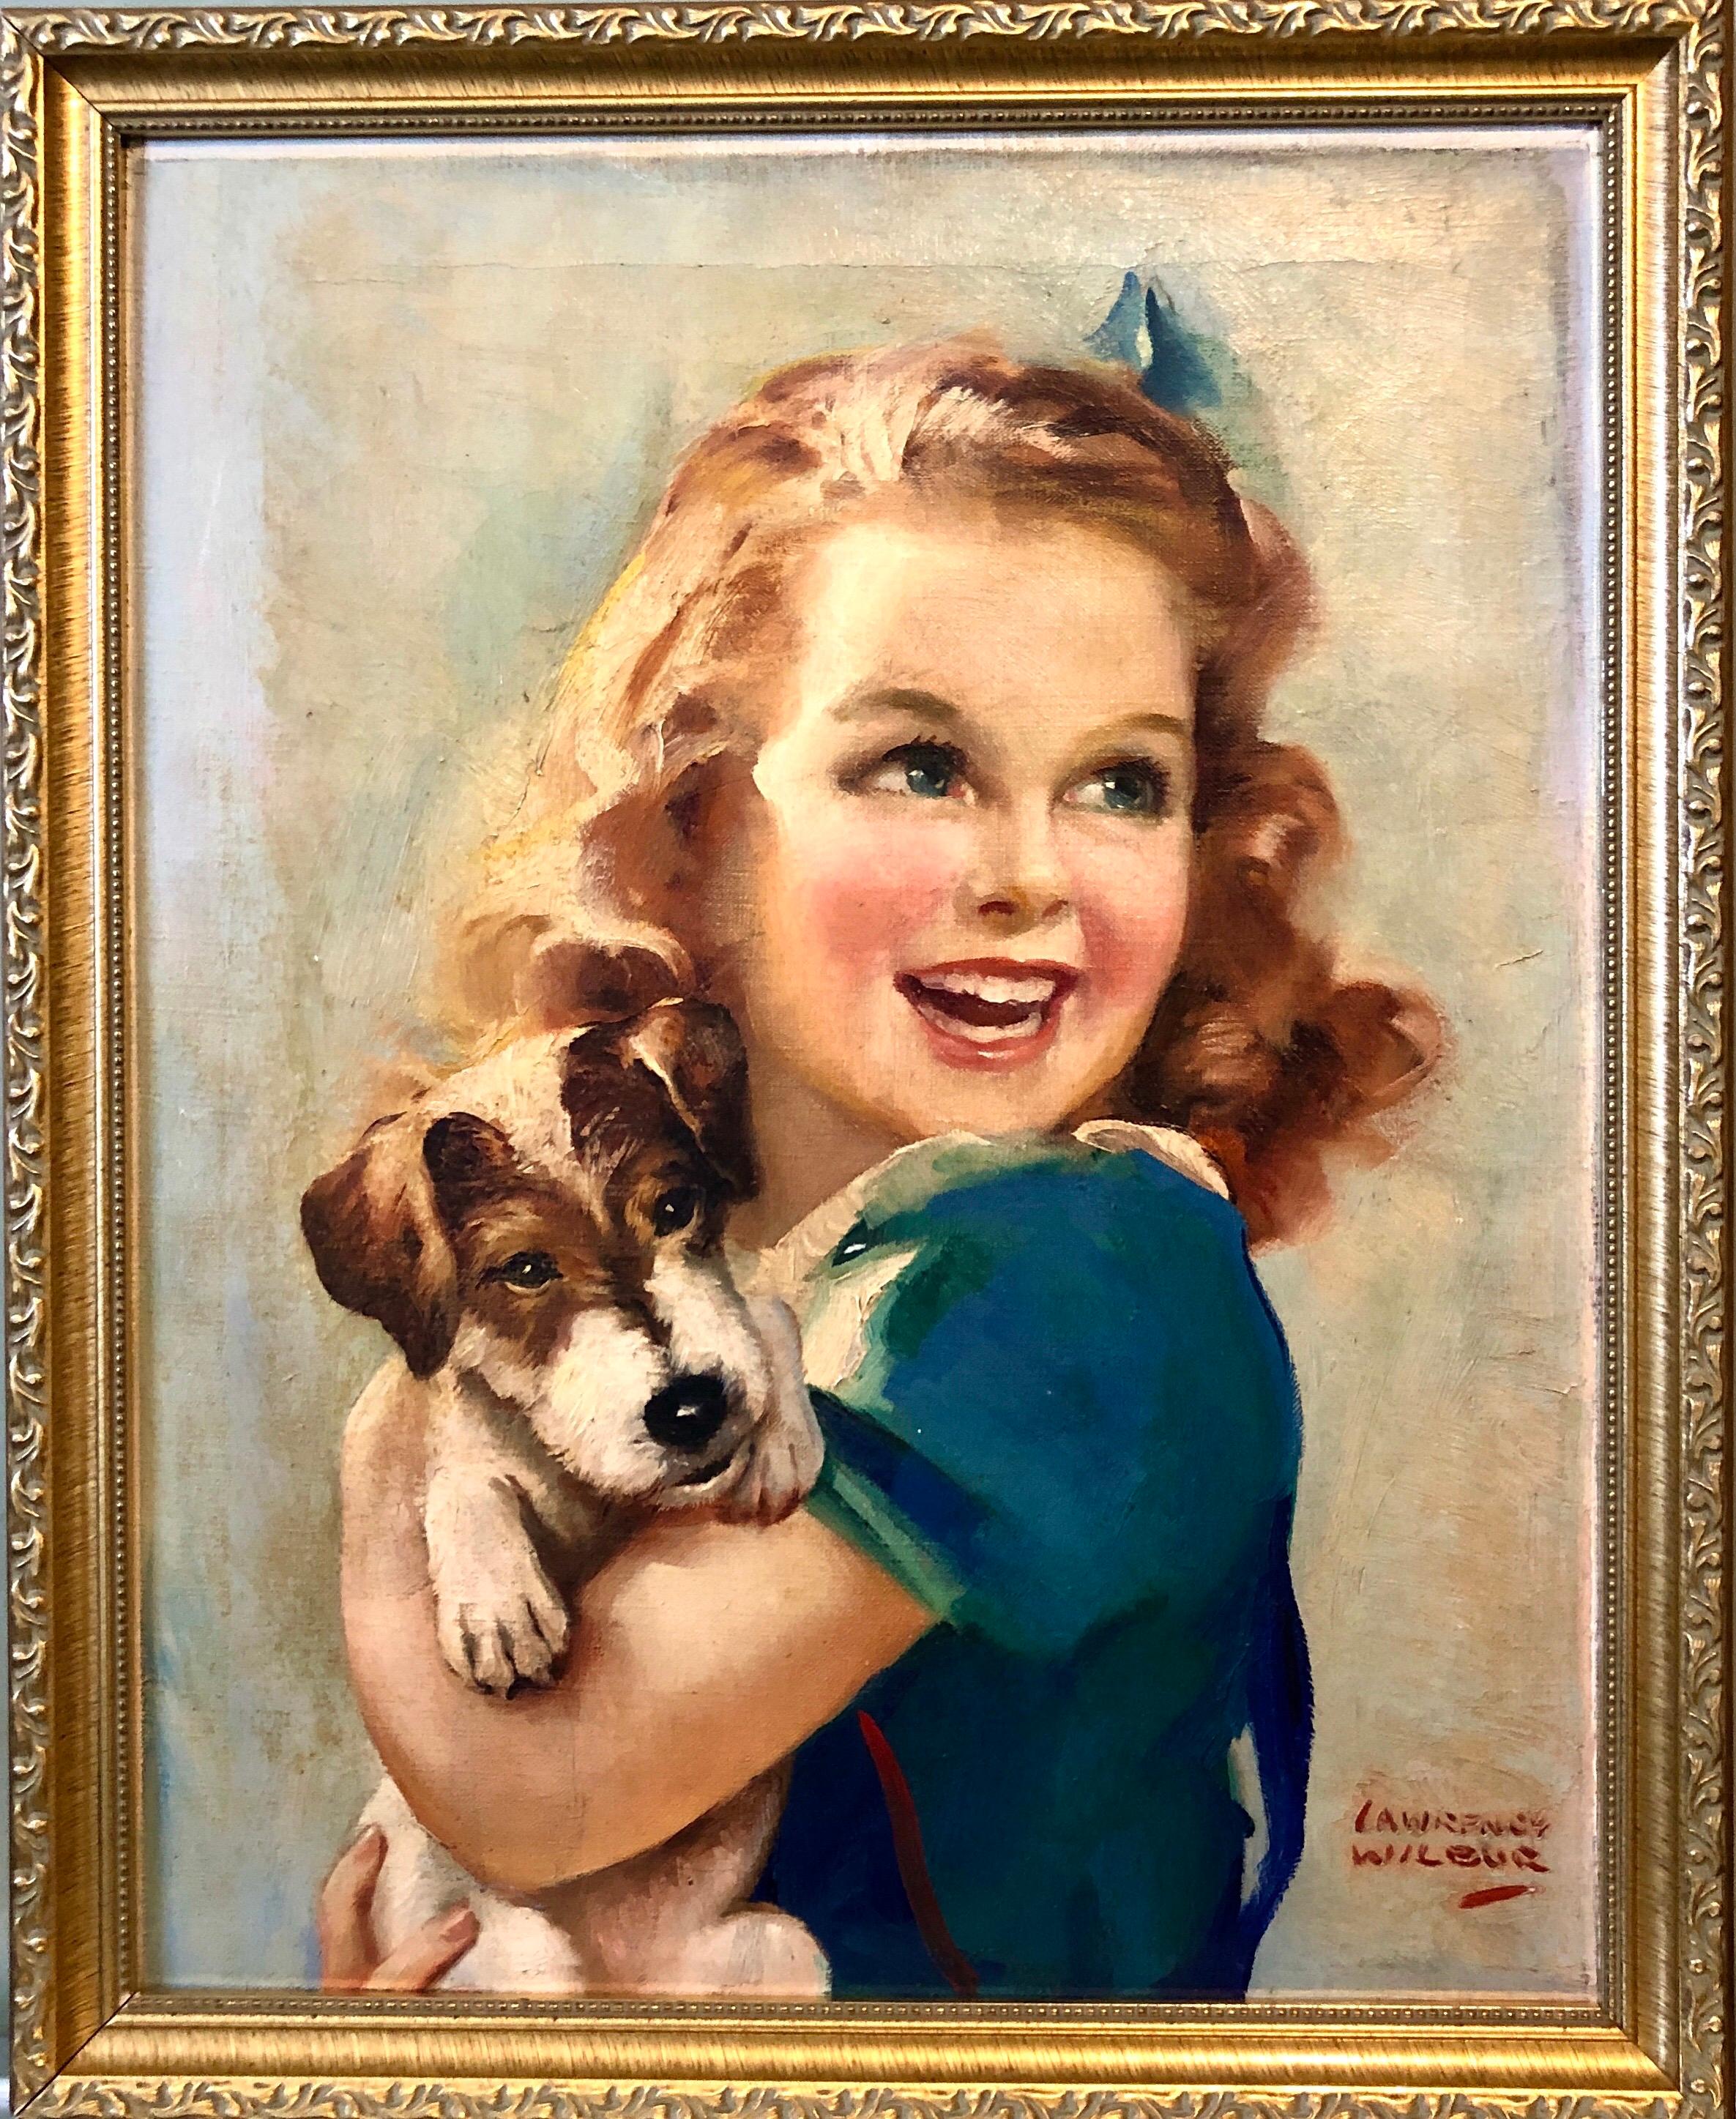 Ein Mädchen und ihr Hund
Dies wurde möglicherweise als Werbung genutzt. Es ist in einem tollen Illustrator-Stil gehalten.
22 x 18. gerahmt.  19.5 x 15,5 Leinwand.


 Lawrence Wilbur (1897 - 1960) war in New York und New Jersey tätig und lebte dort. 